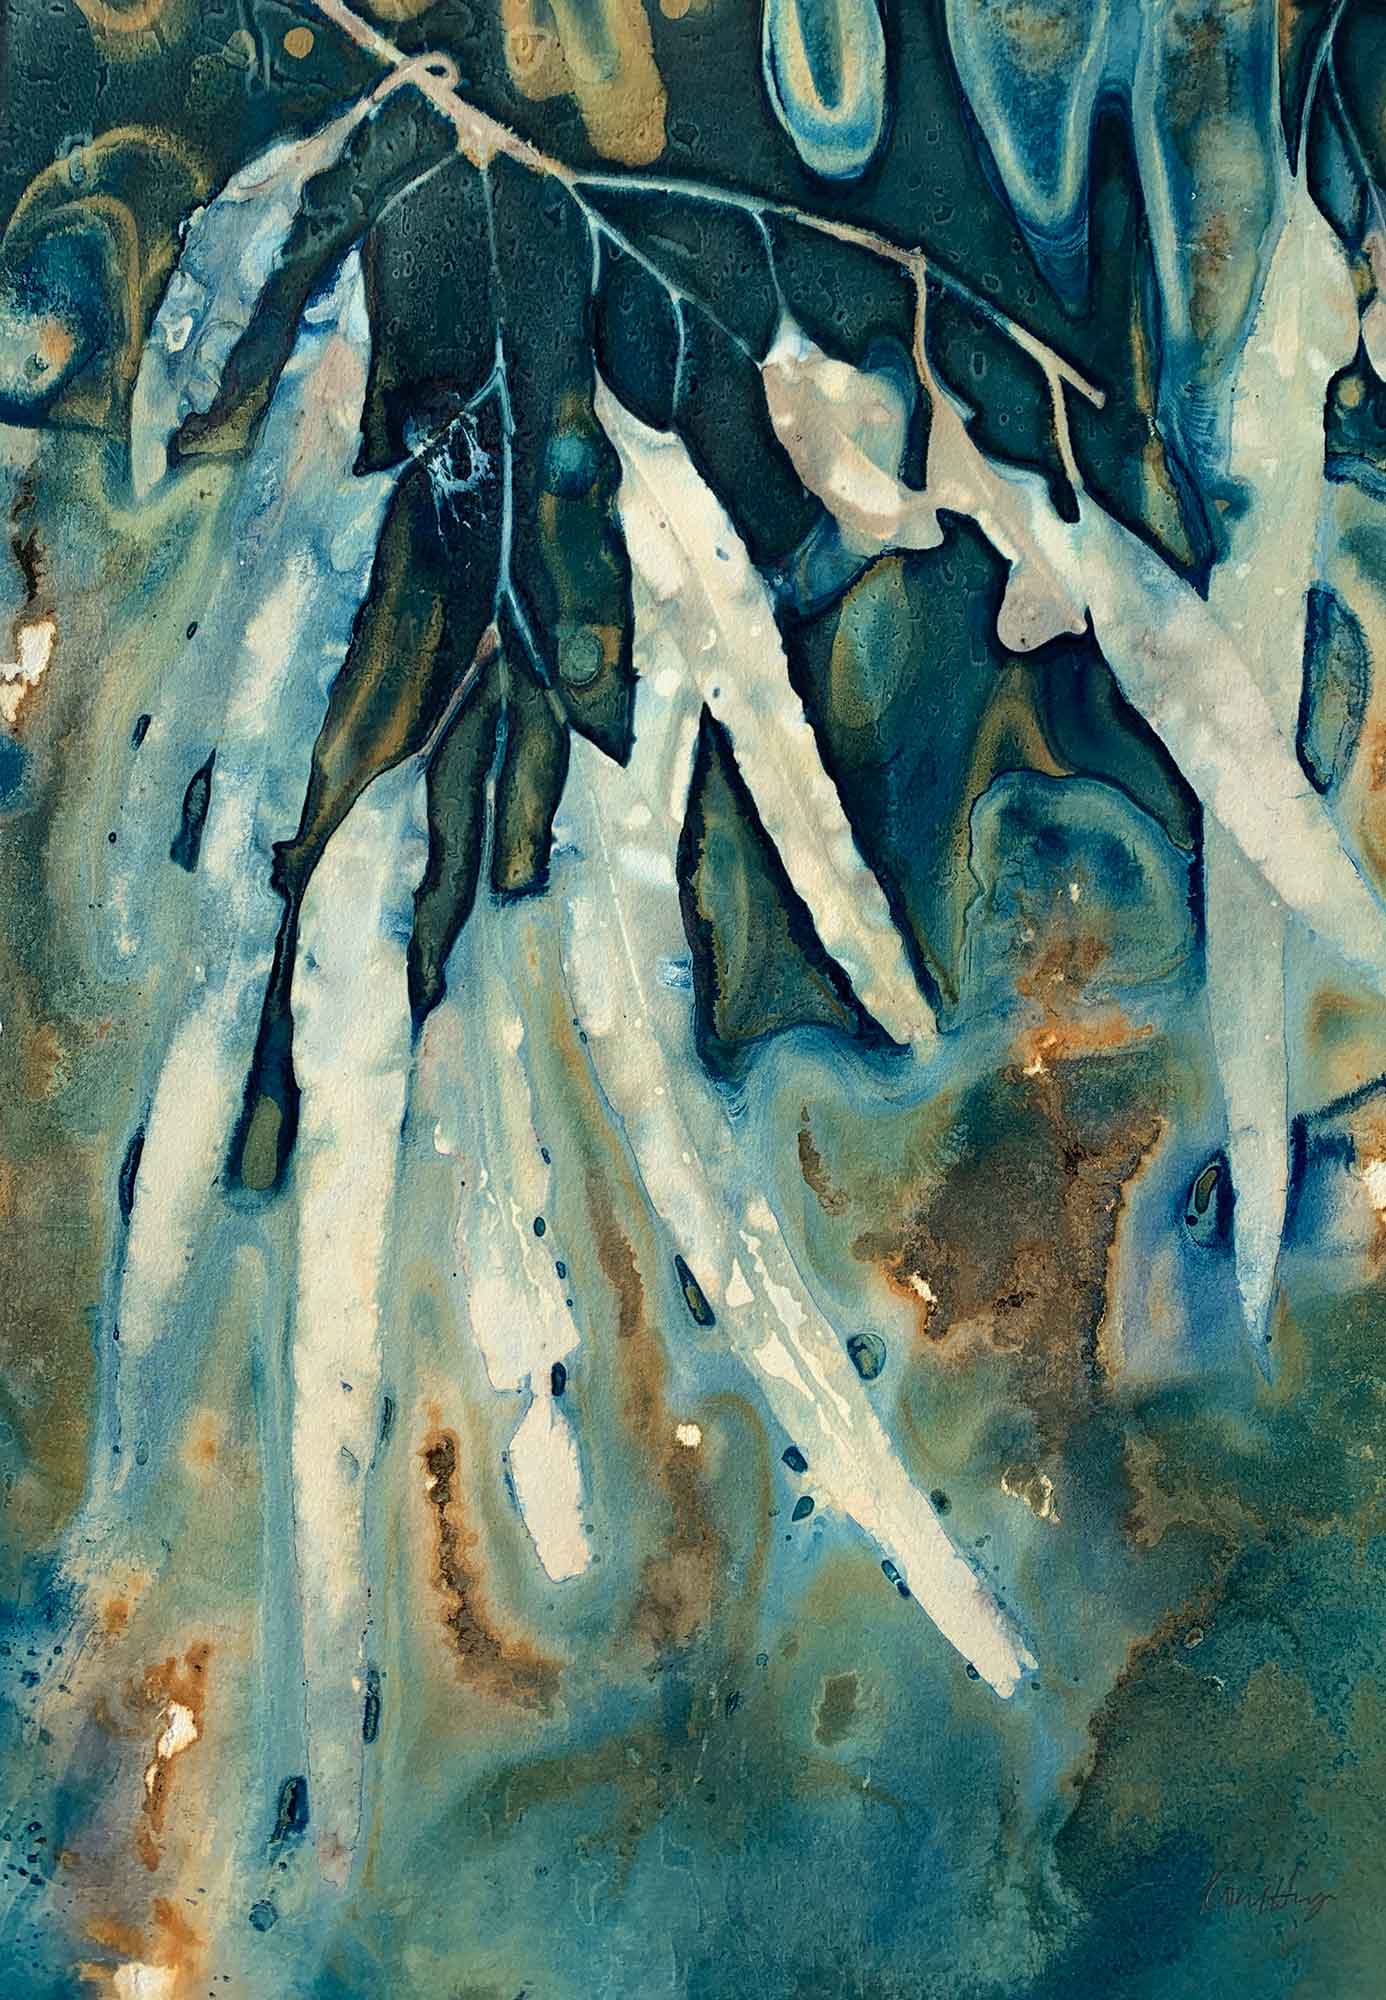 Of droughts and flooding rains II - Kim Herringe, wet cyanotype